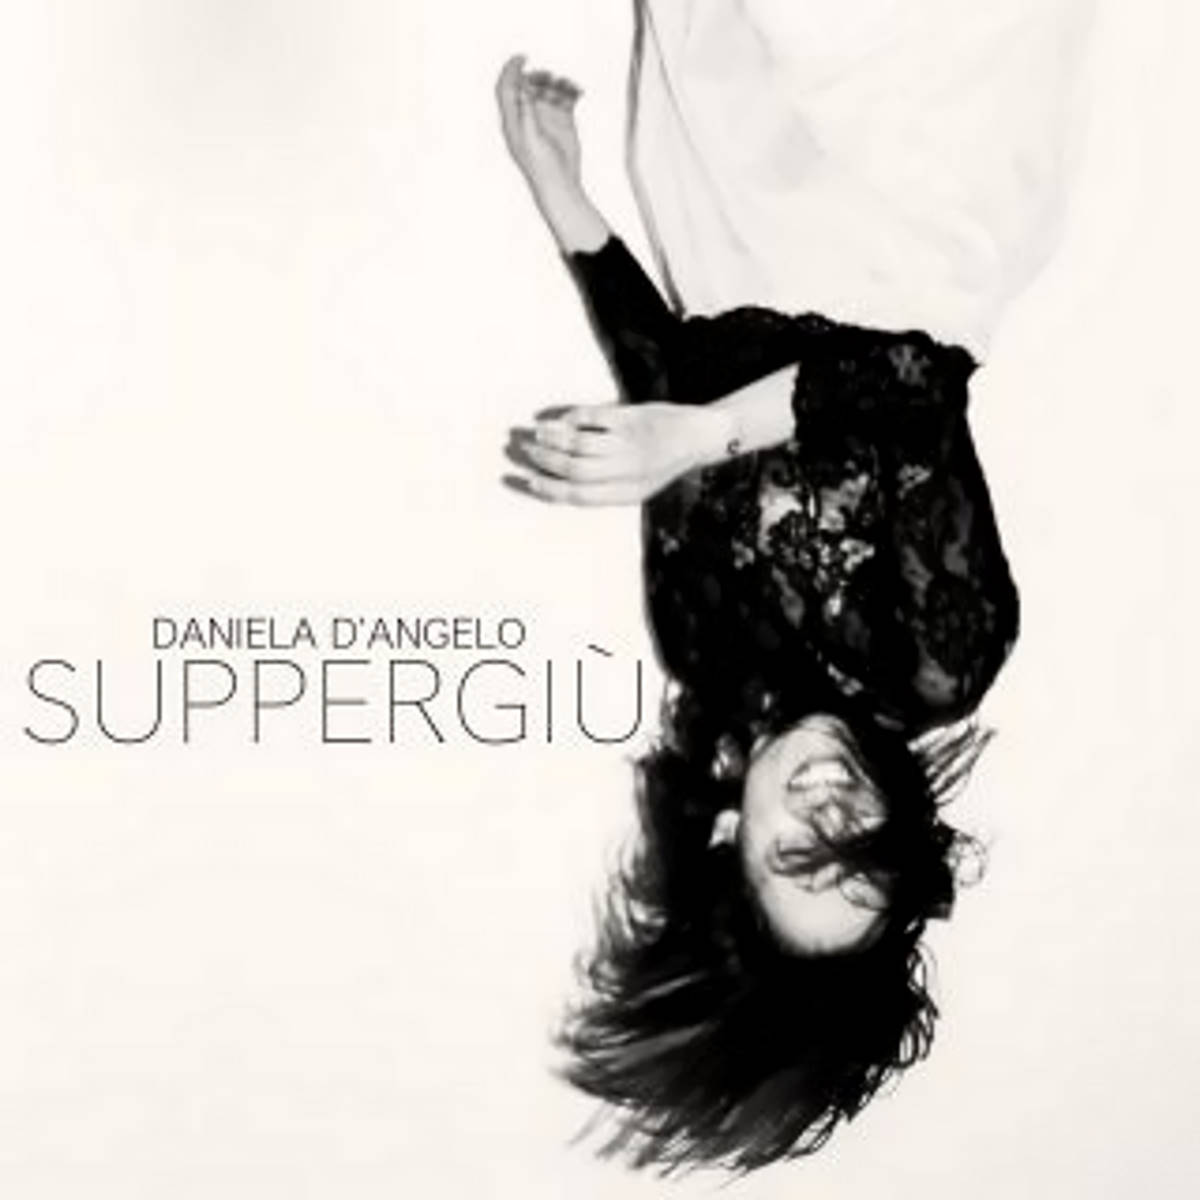 DANIELA D’ANGELO, Suppergiù è il nuovo estratto dall’album “Petricore”, esordio solista della cantautrice